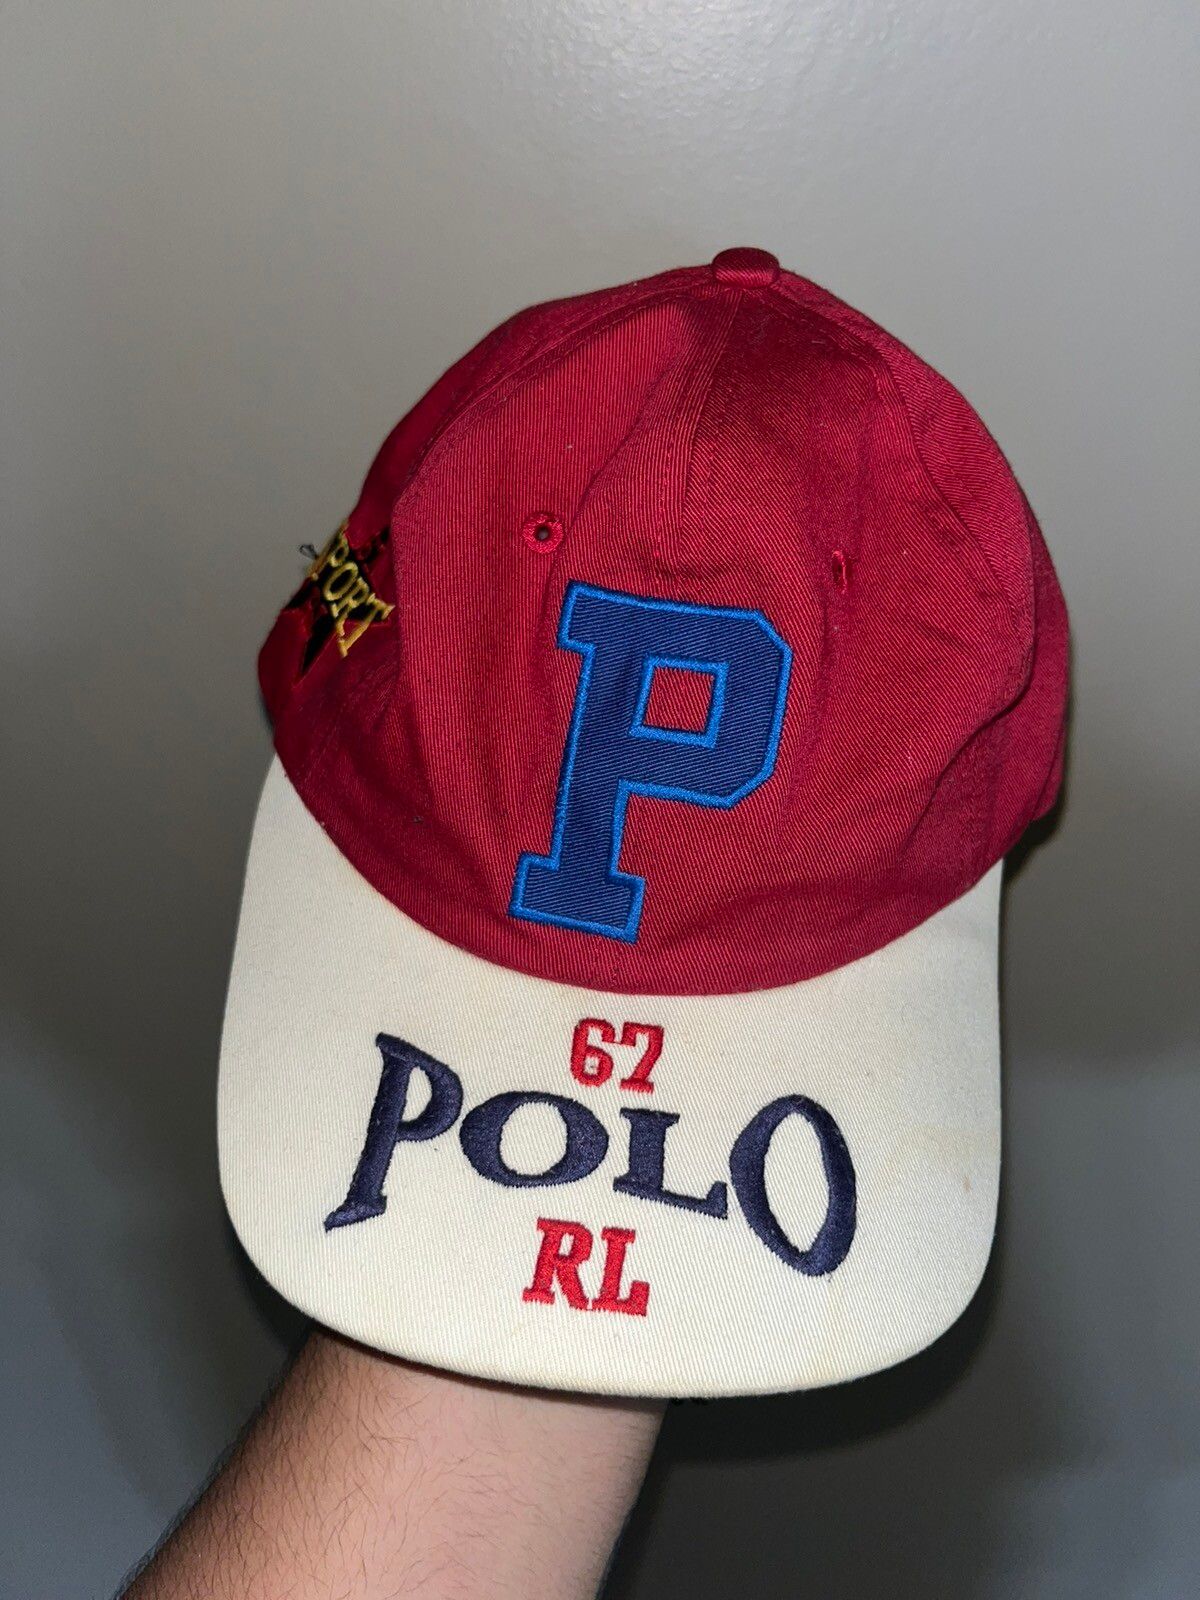 Polo Ralph Lauren POLO RALPH LAUREN HAT POLO SPORT USA RL-67 | Grailed